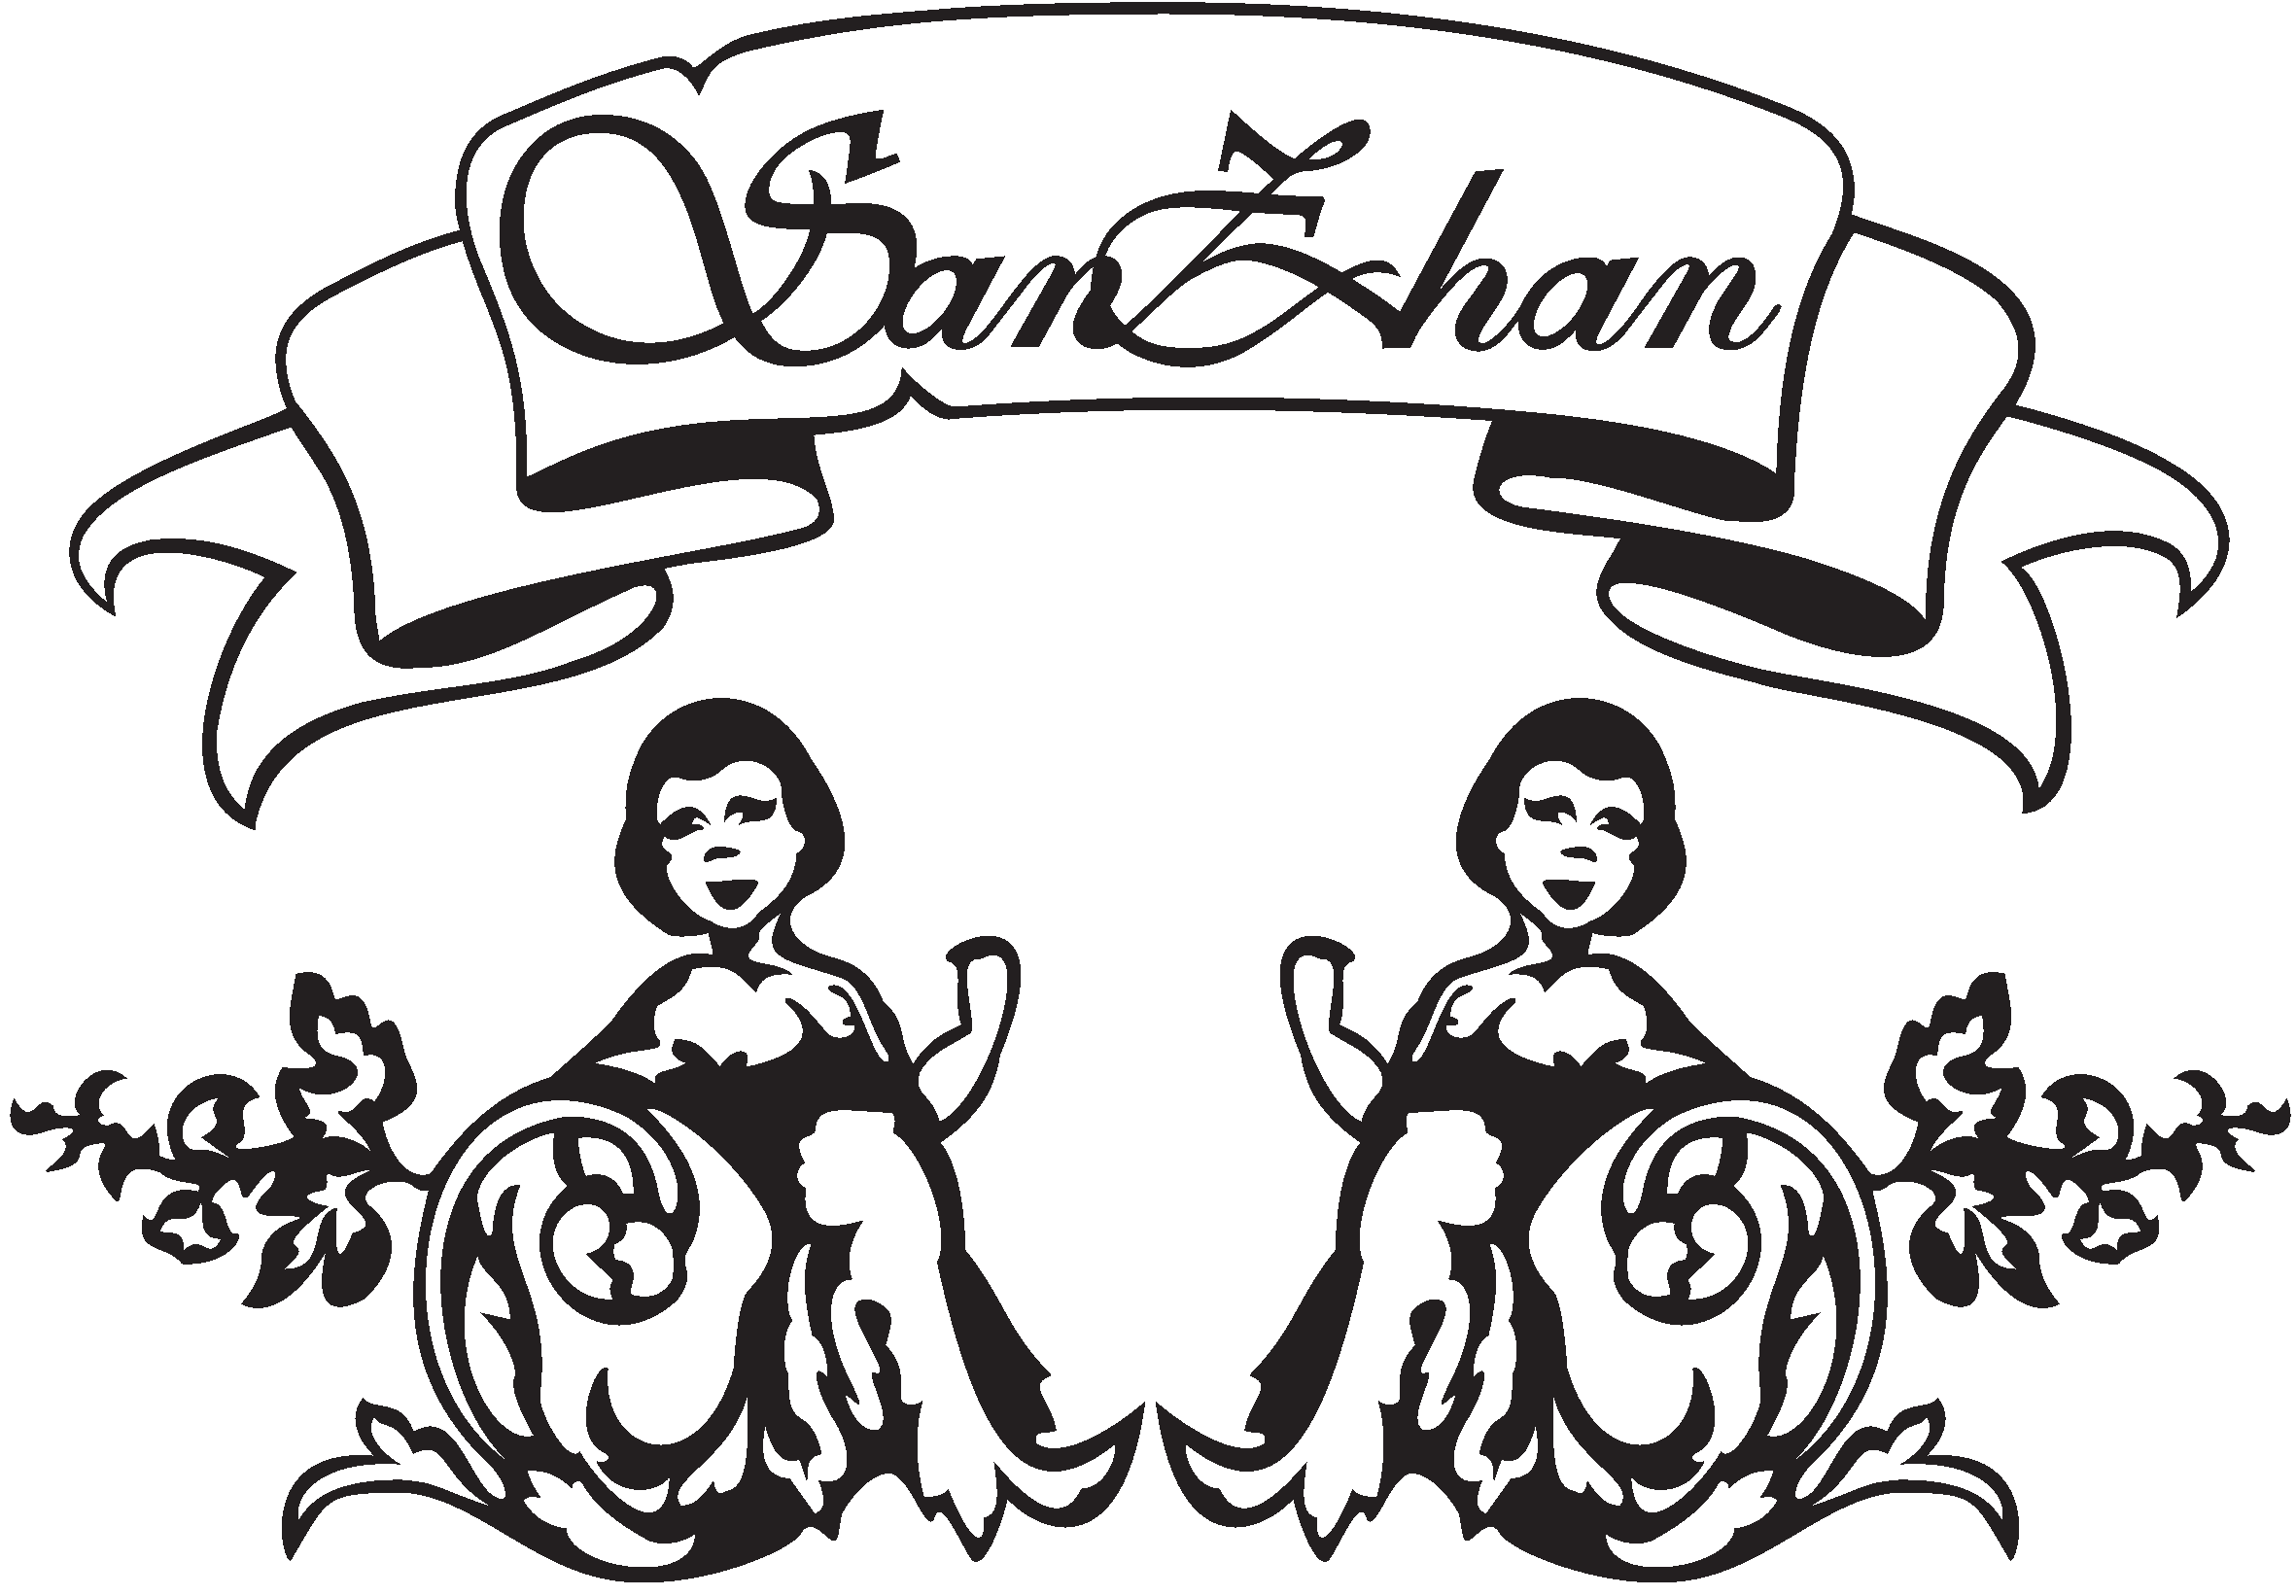 SanZhan (Санжан)